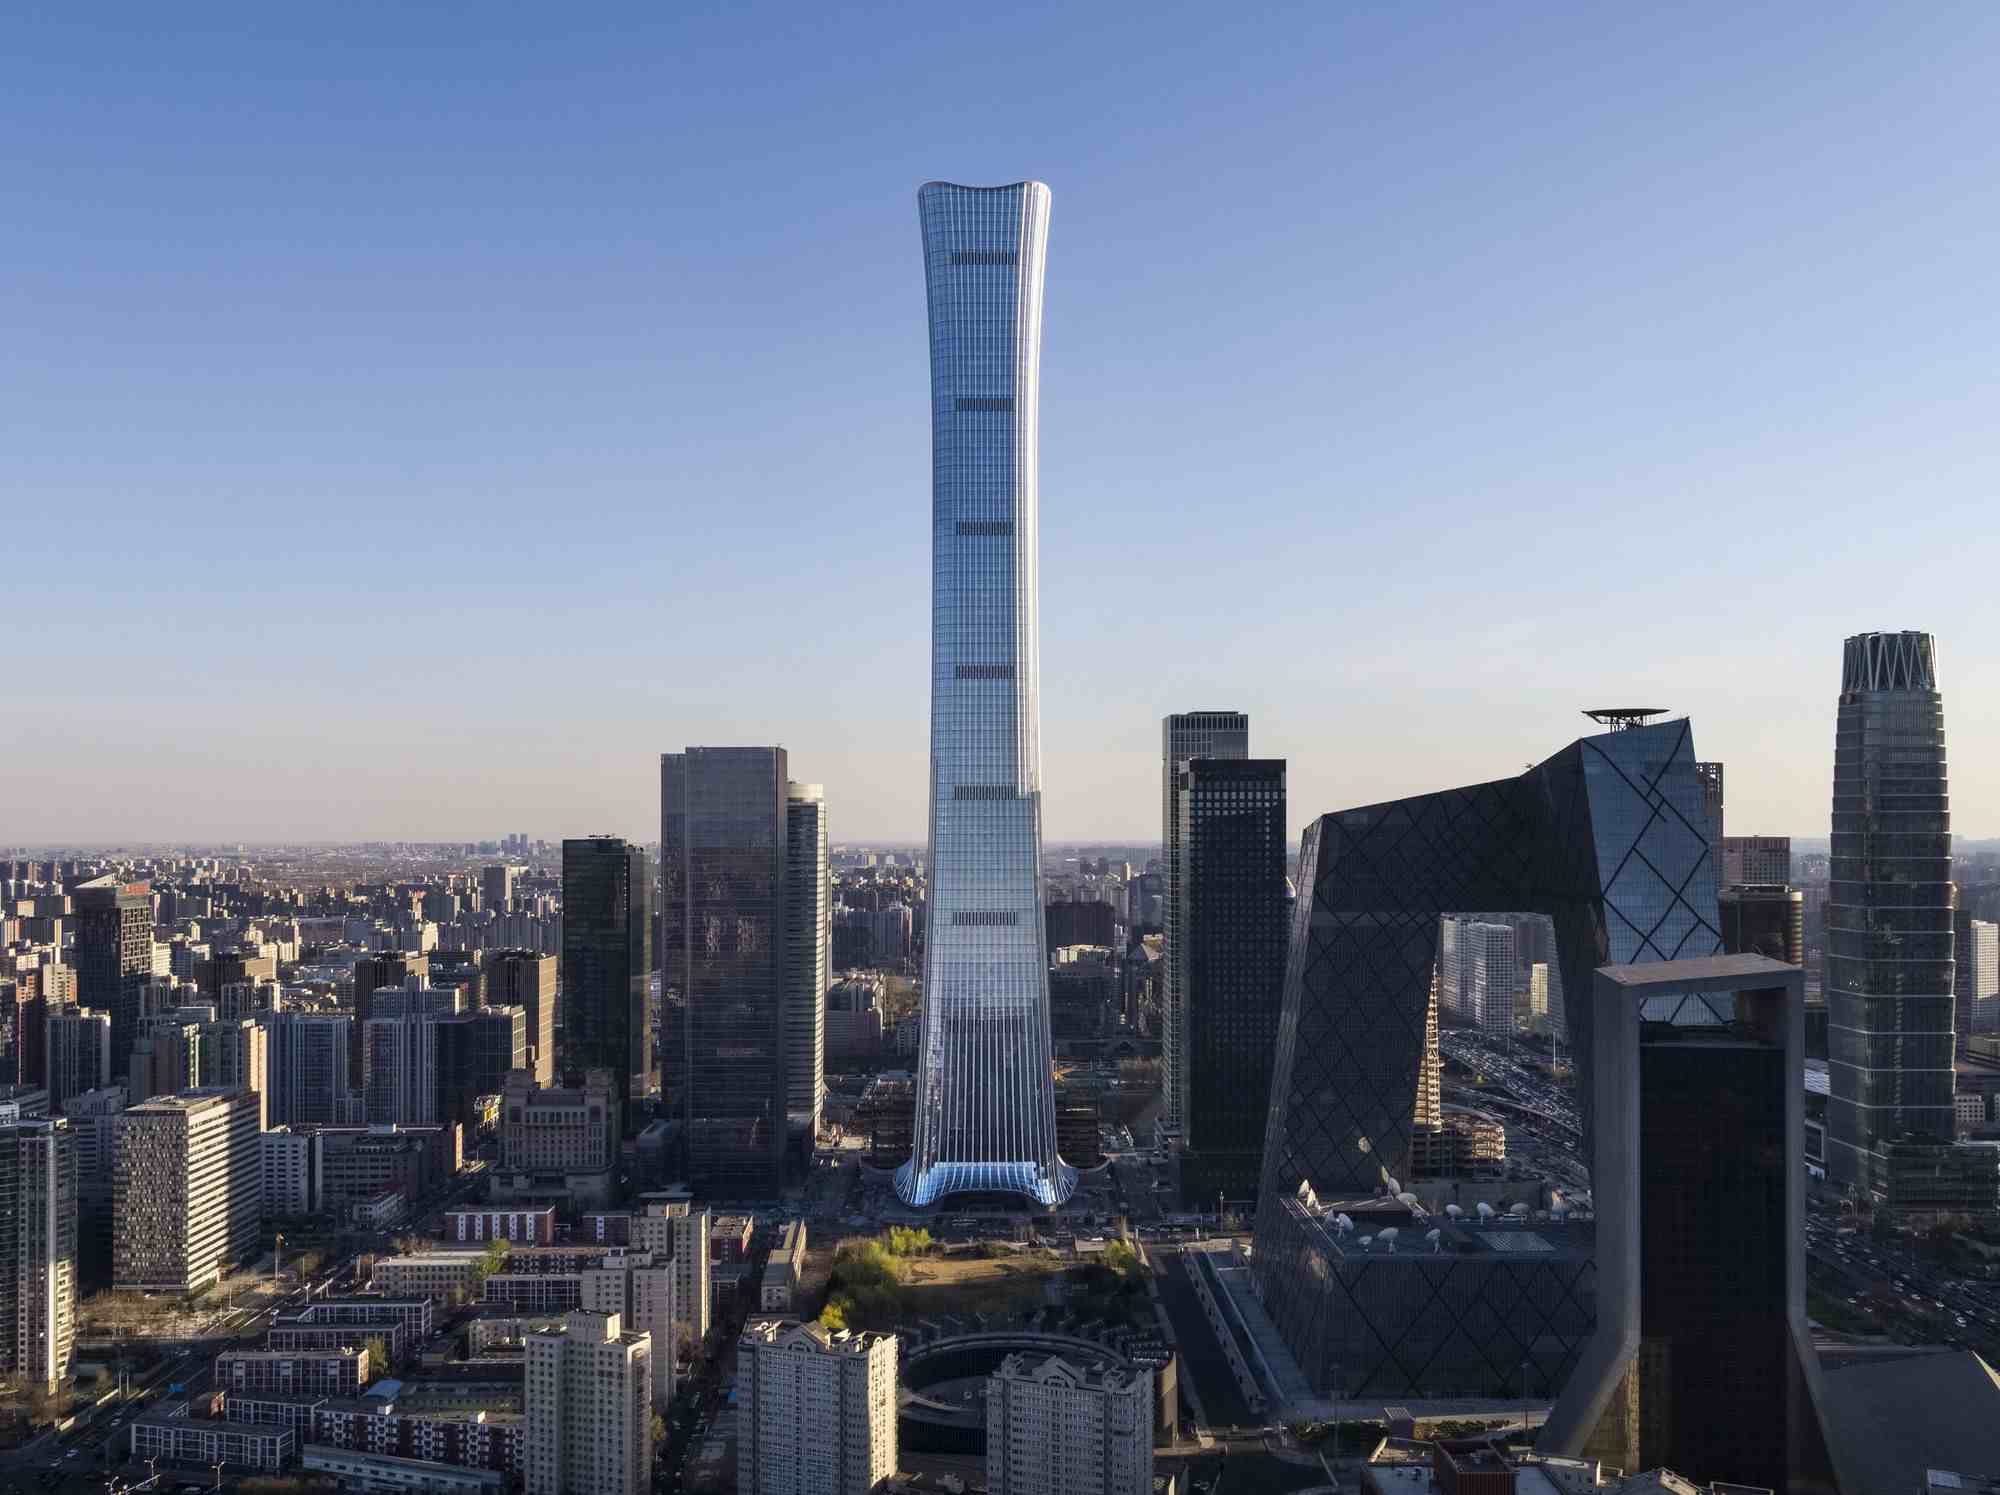 五座曾问鼎“年度世界第一高”的中国摩天楼